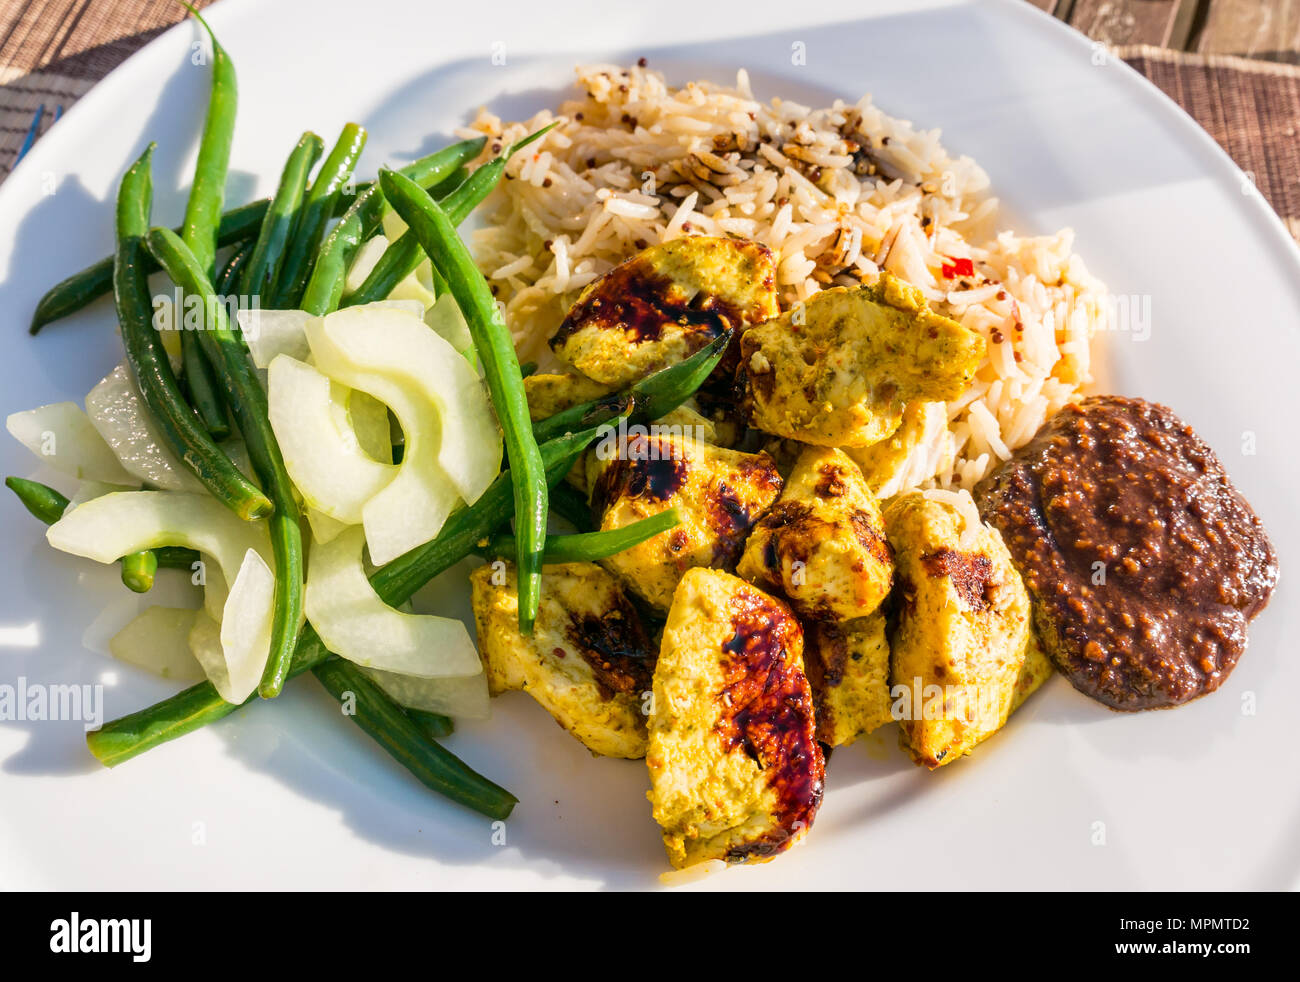 Indonesischen Mahlzeit weiß Teller Tisch serviert auf der Terrasse in der Sonne. Chicken Satay, Erdnuß-Sauce, kecap masin Sauce, Reis, Bohnen und Gurken Stockfoto